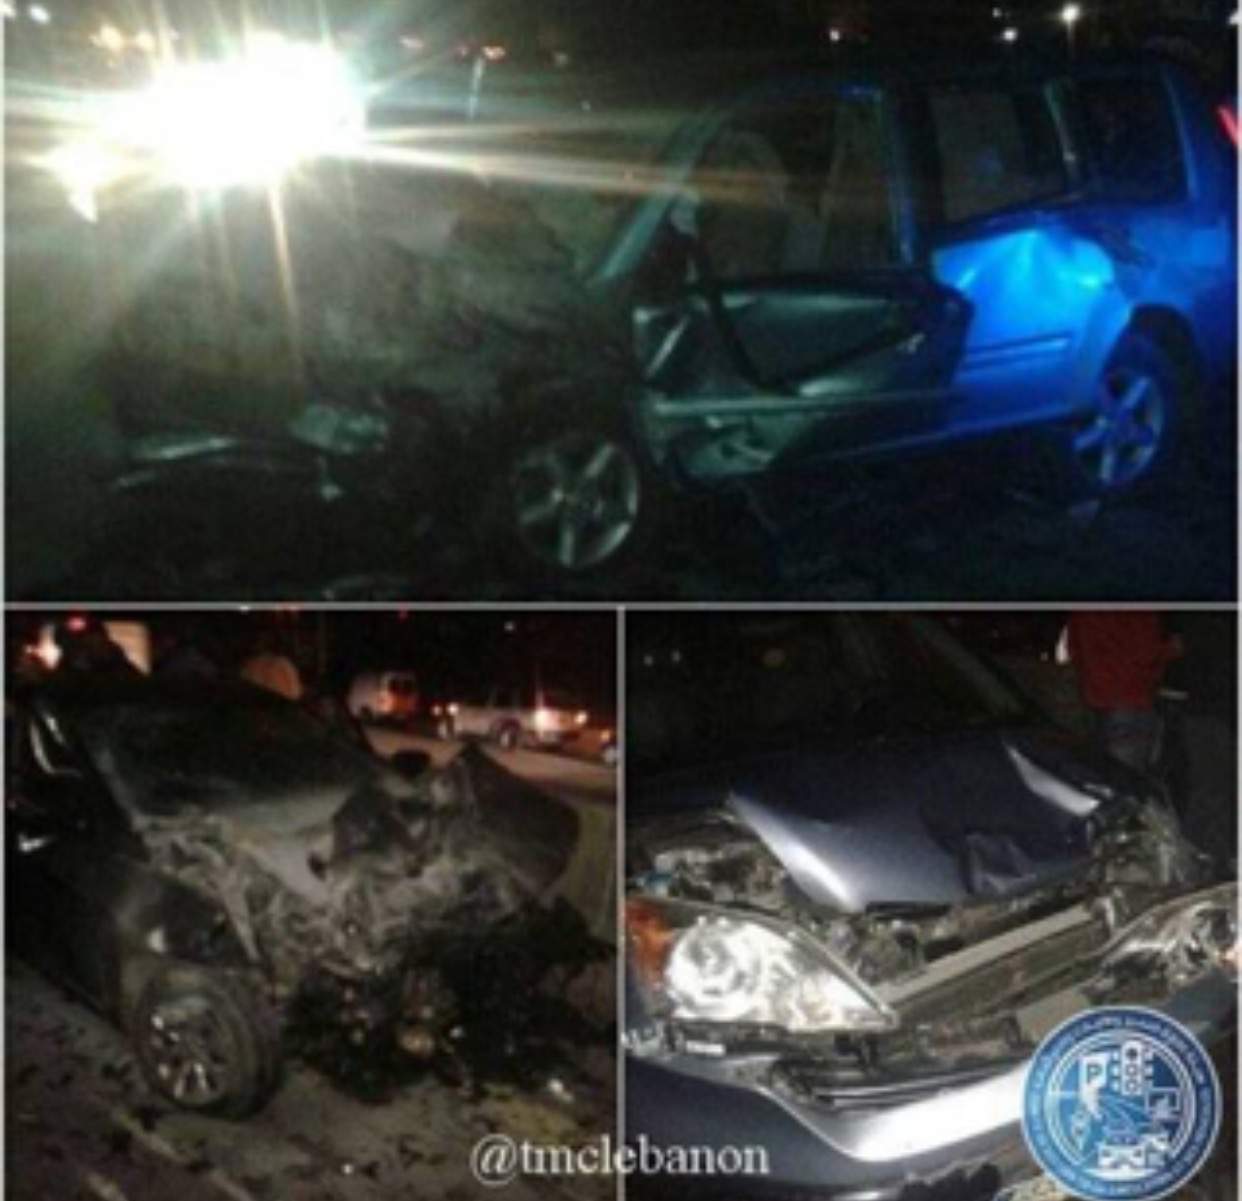 بالصورة: قتيل و 6 جرحى نتيجة تصادم بين 3 سيارات على اوتوستراد خلدة